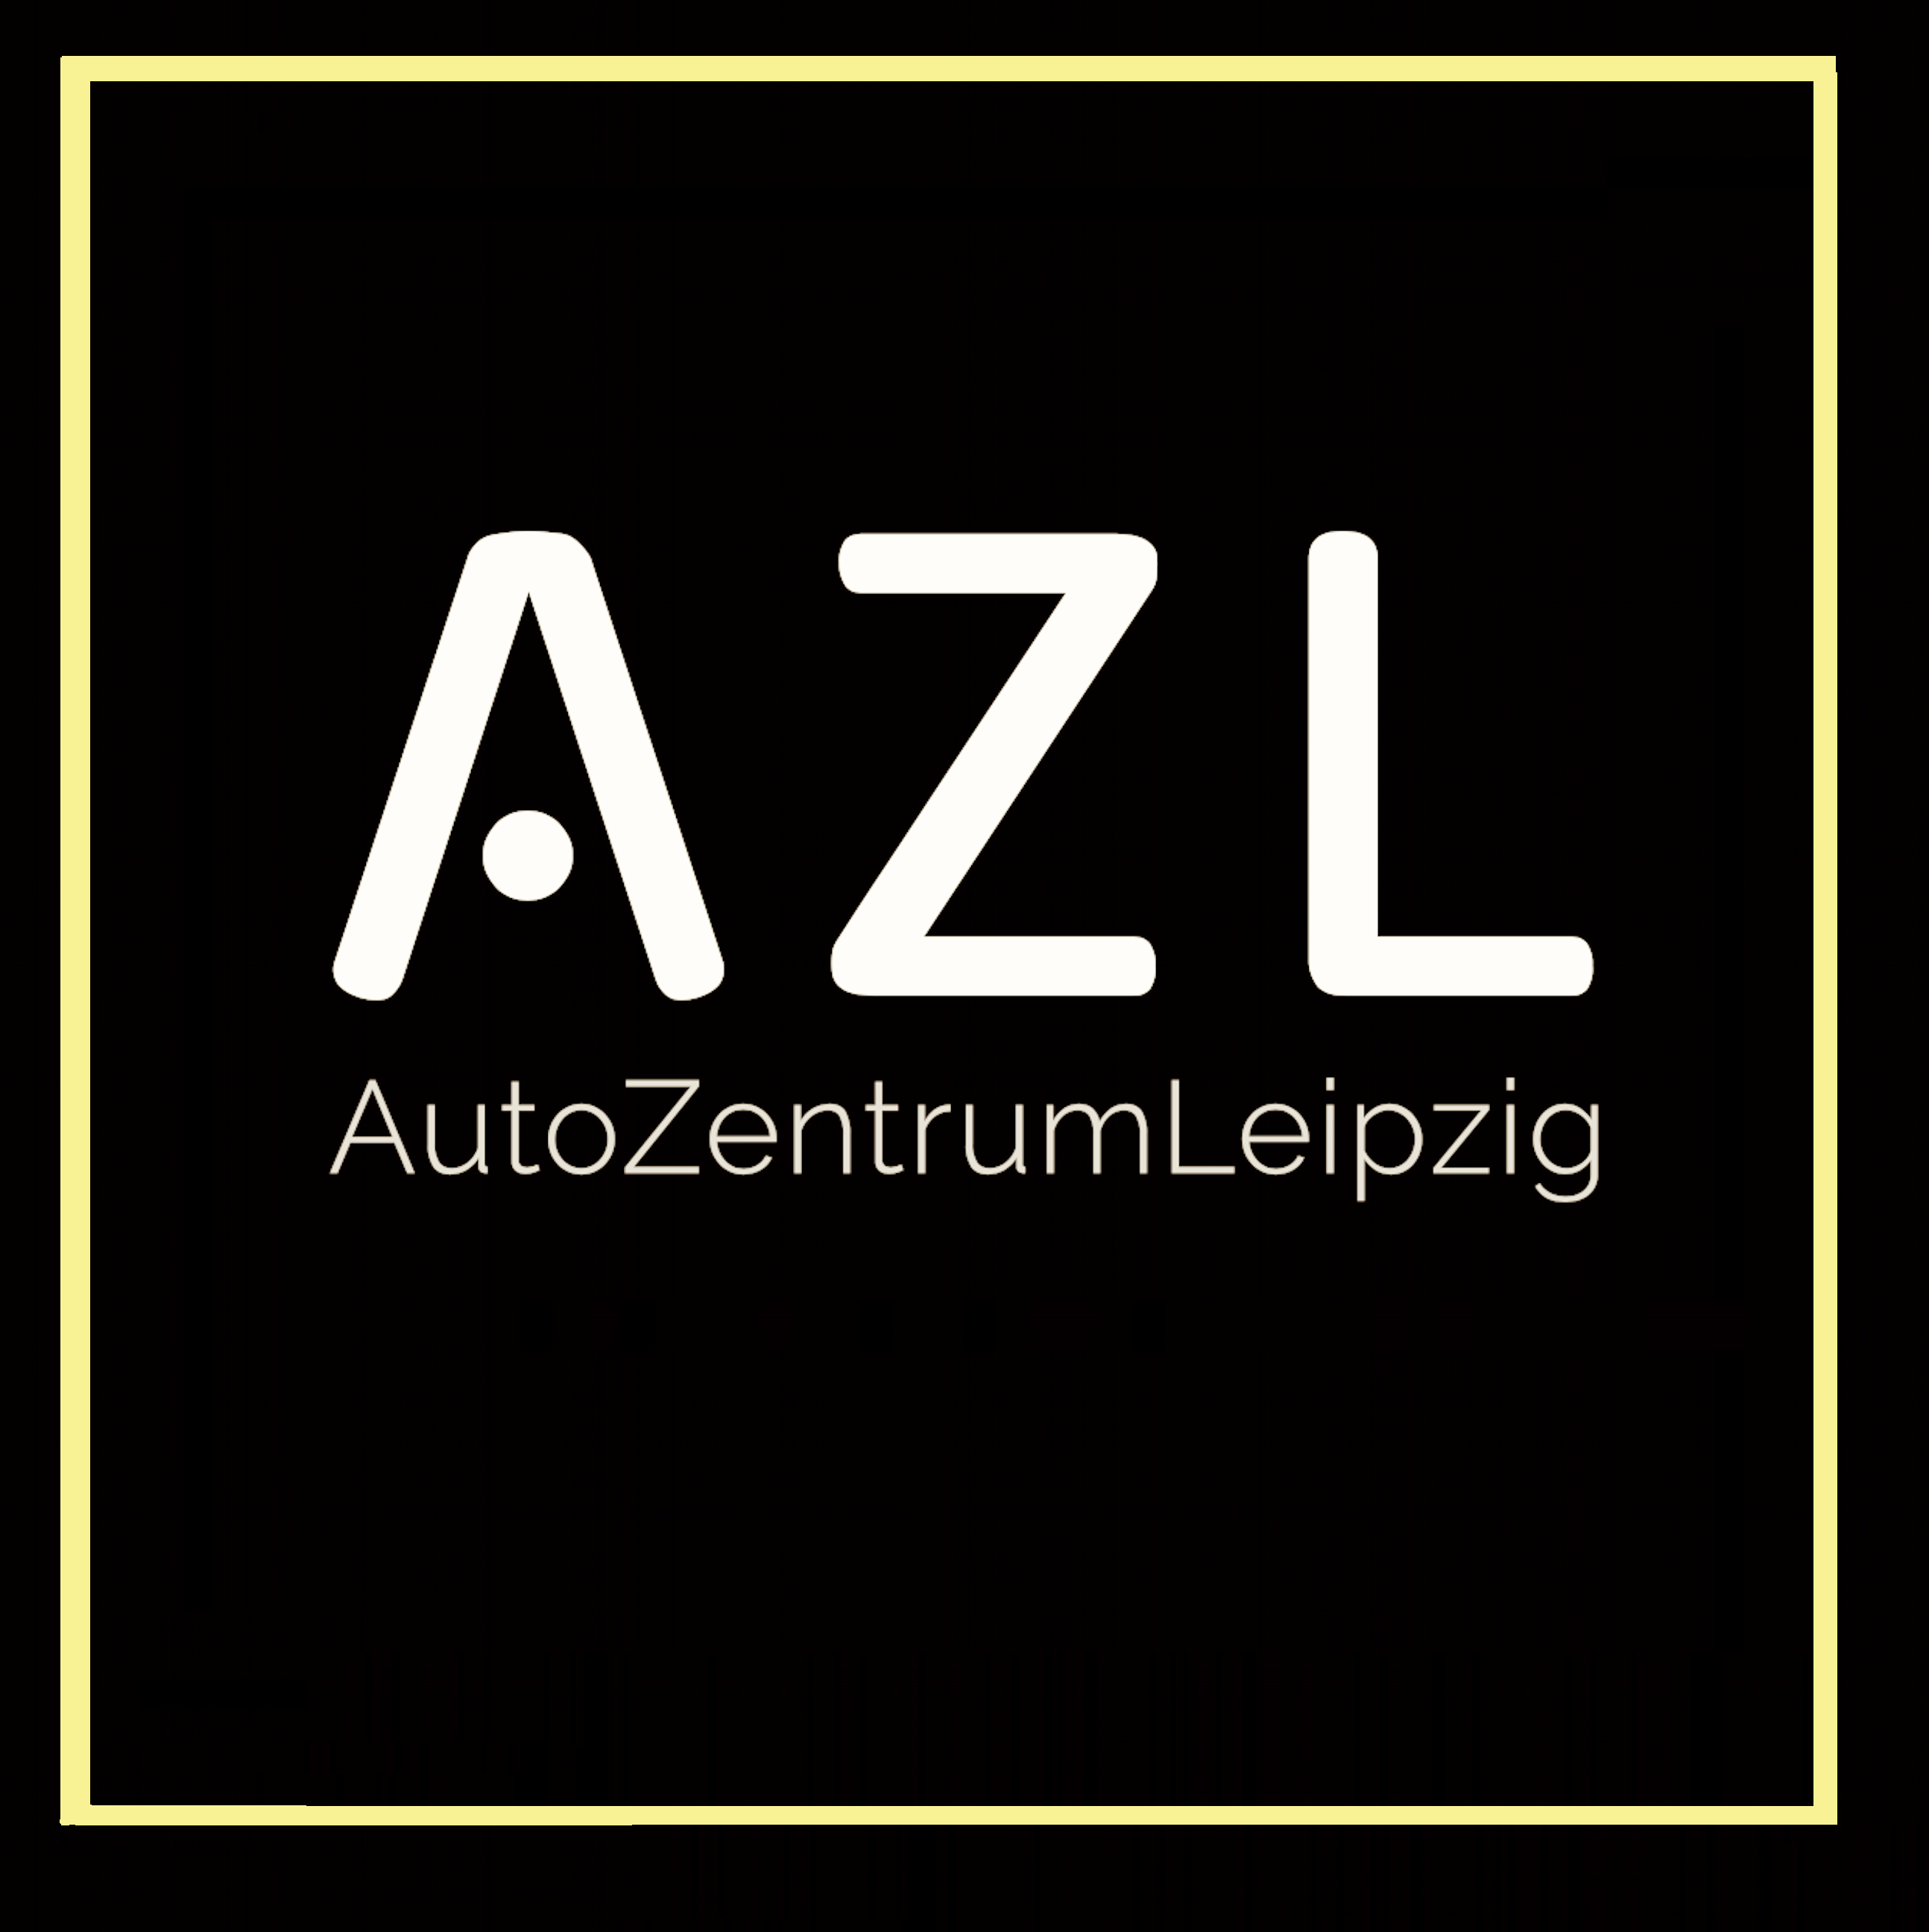 AZL Autozentrum Leipzig GmbH & Co. KG